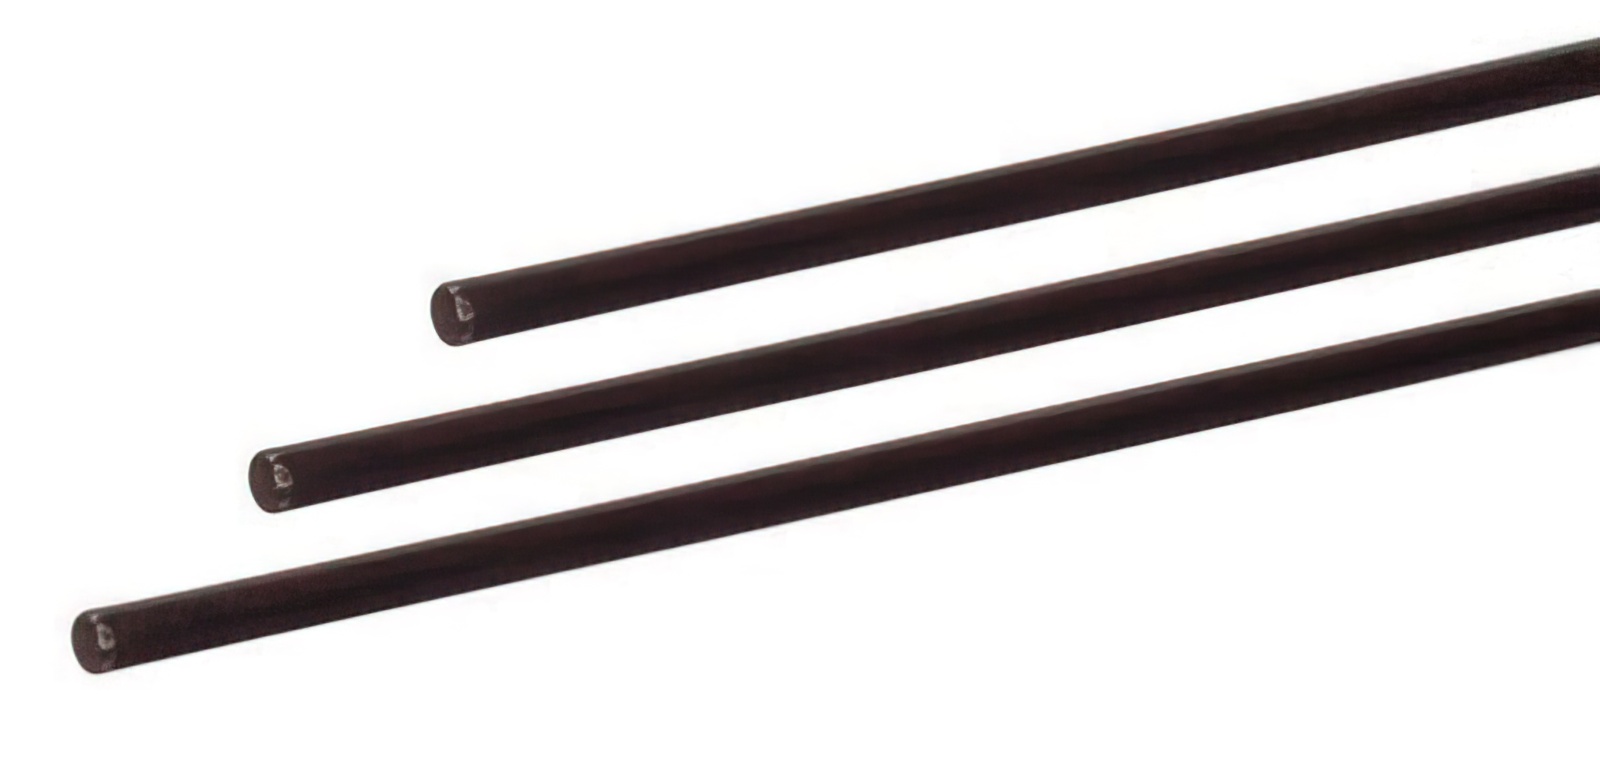 5 Stück - Gfk-Vollstab (Fiberglasstab/Glasfaserstab) 6  mm 200 cm schwarz für Drachen- und Modellbau Basteln Montagen Messebau Industrie Haushalt